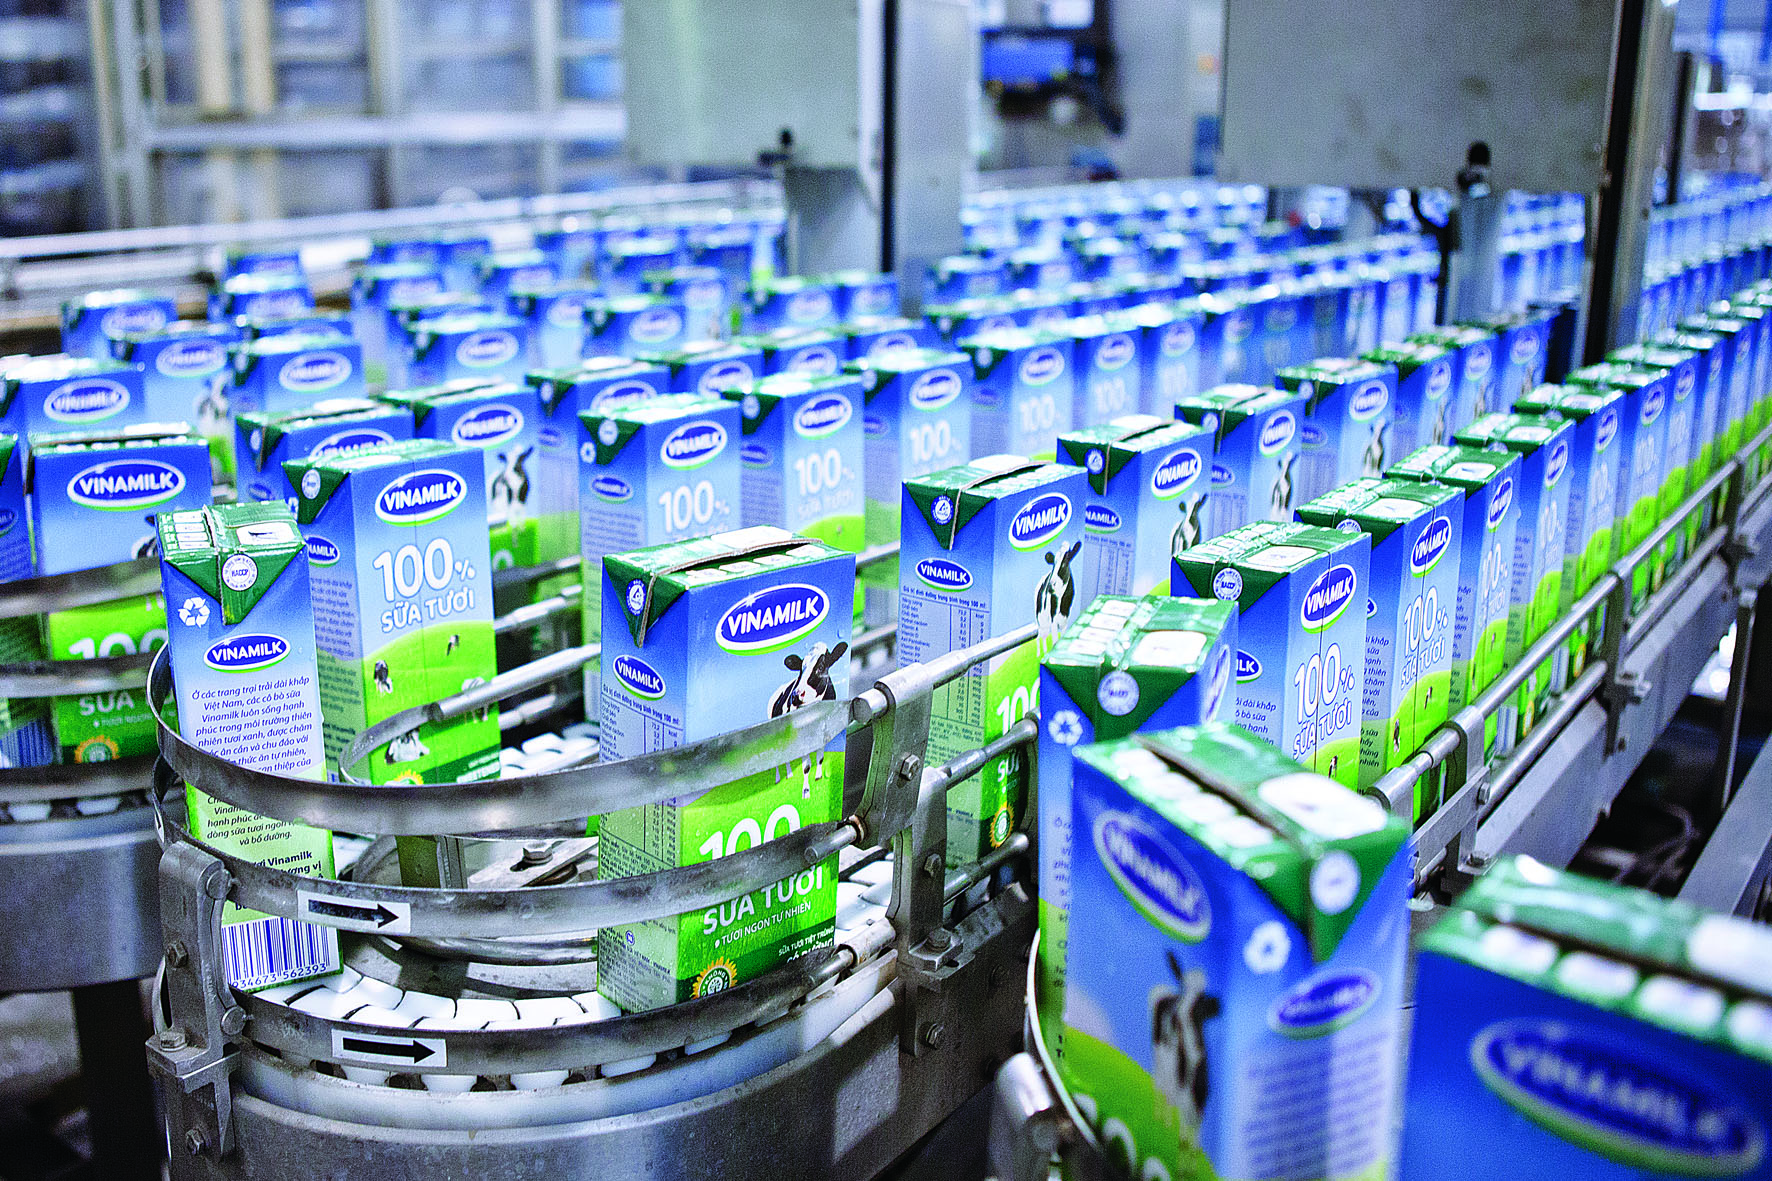 Dây truyền công nghệ hiện đại trong sản xuất sữa nước của Vinamilk